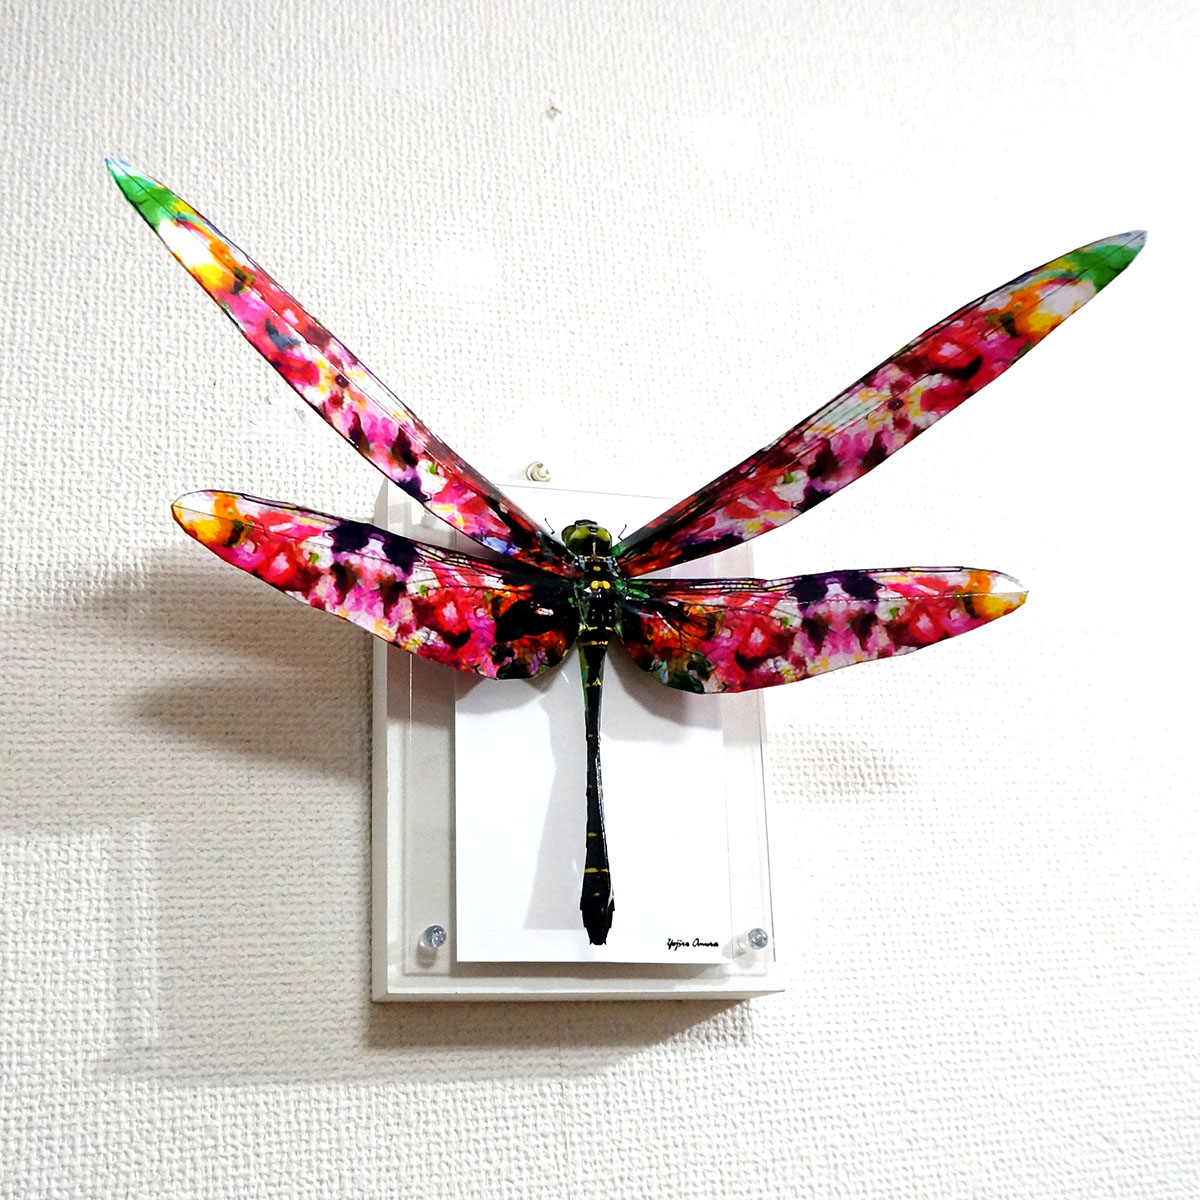 Twoucan 蜻蛉 の注目ツイート イラスト マンガ コスプレ モデル